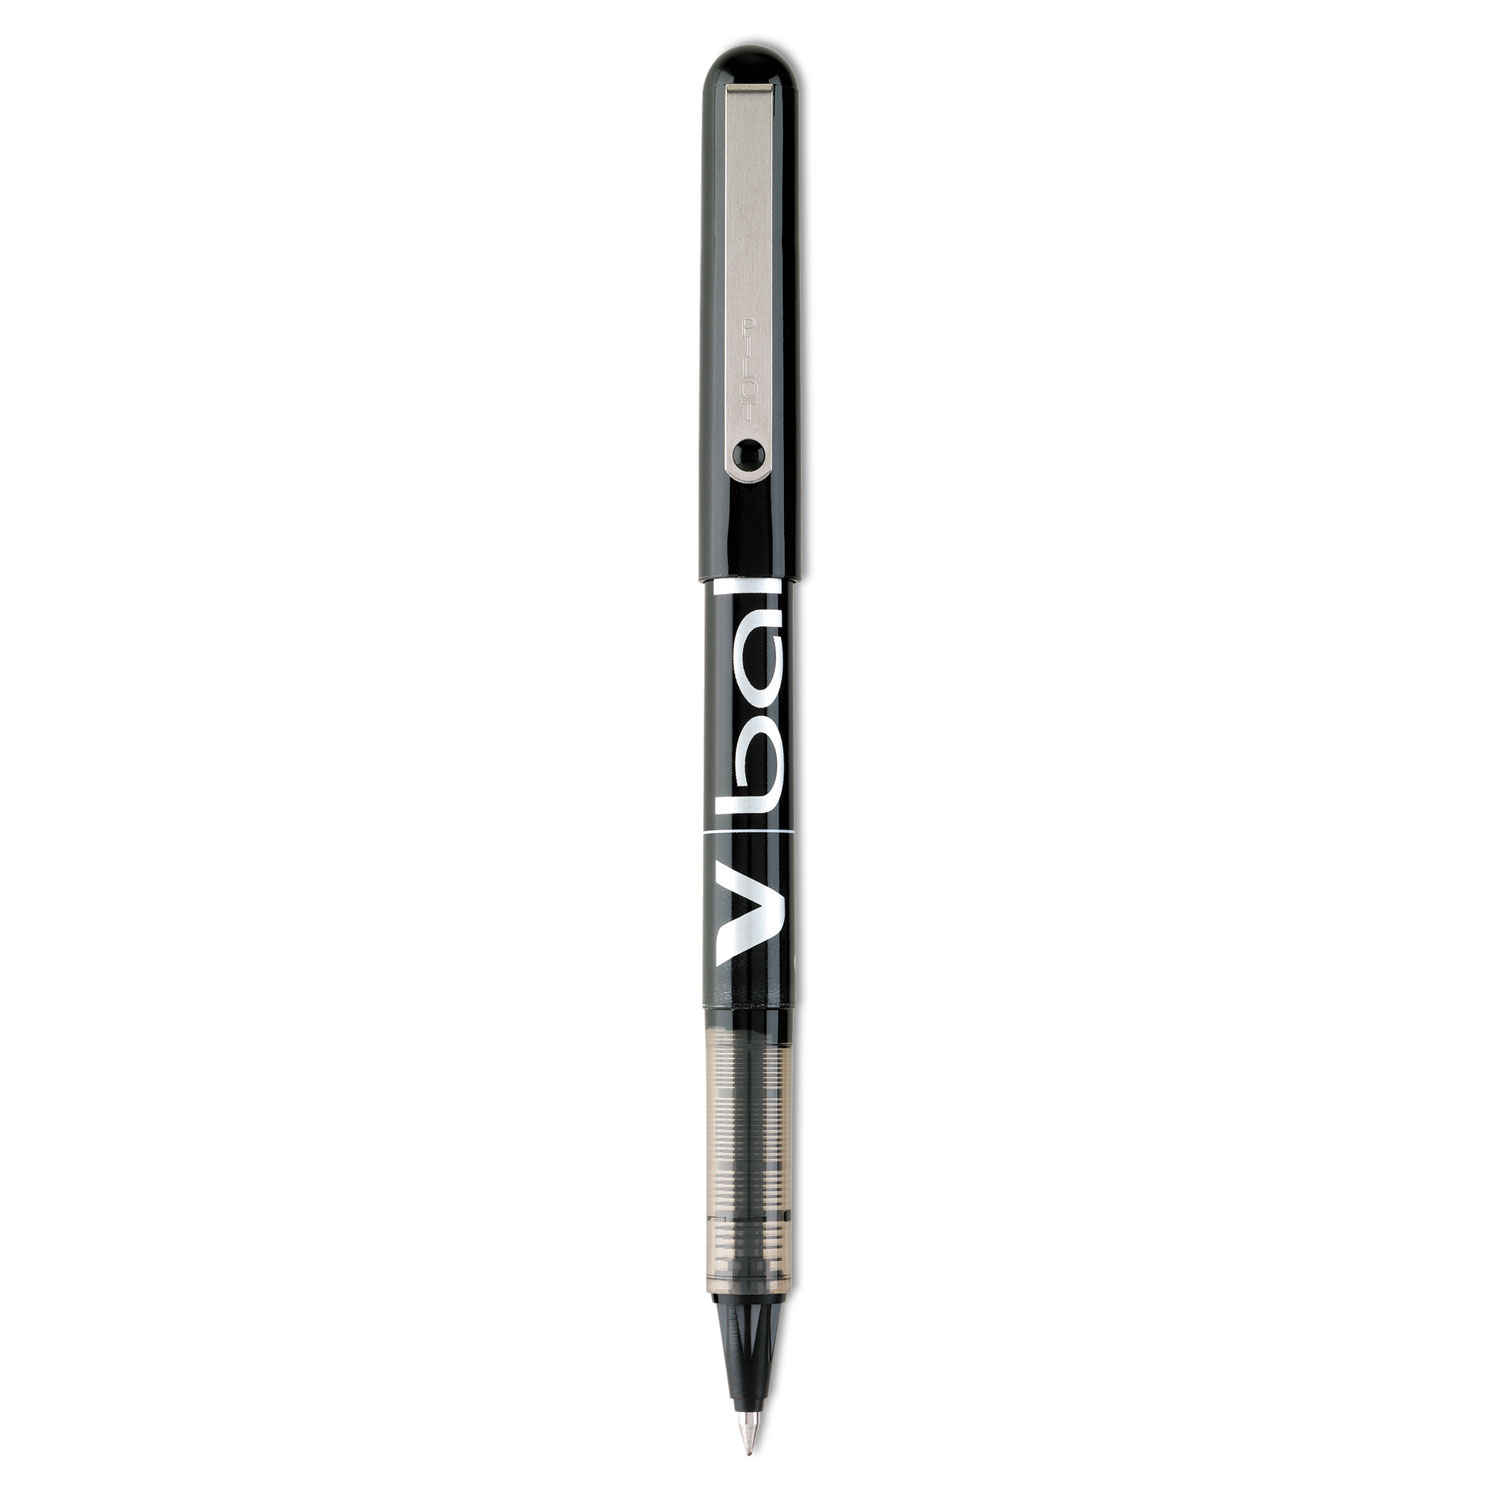  Pilot 35200 VBall Liquid Ink Stick Roller Ball Pen, 0.5mm, Black Ink/Barrel, Dozen (PIL35200) 